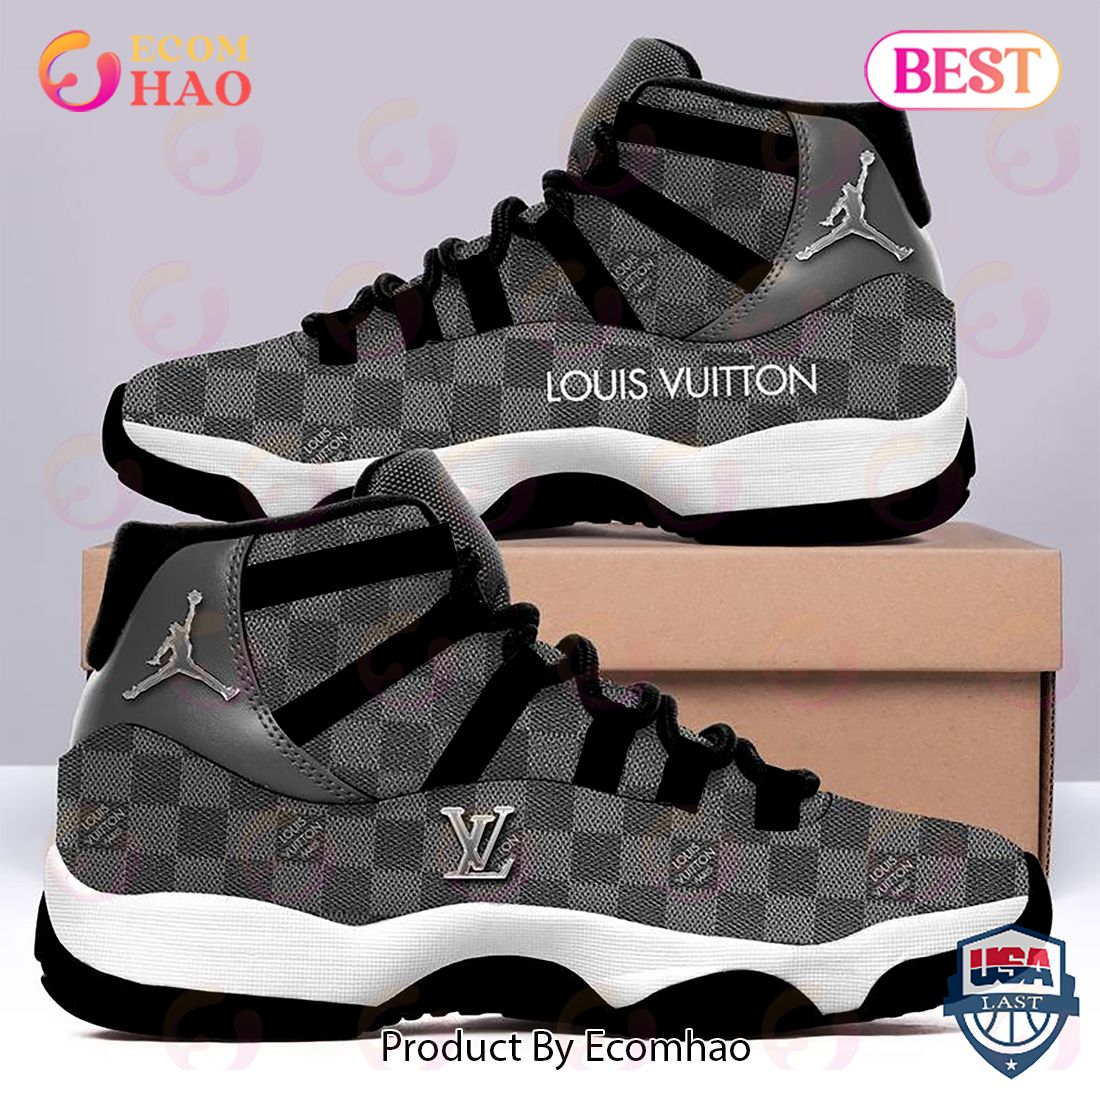 Louis Vuitton Air Jordan 11 Shoes pod design official ? h08